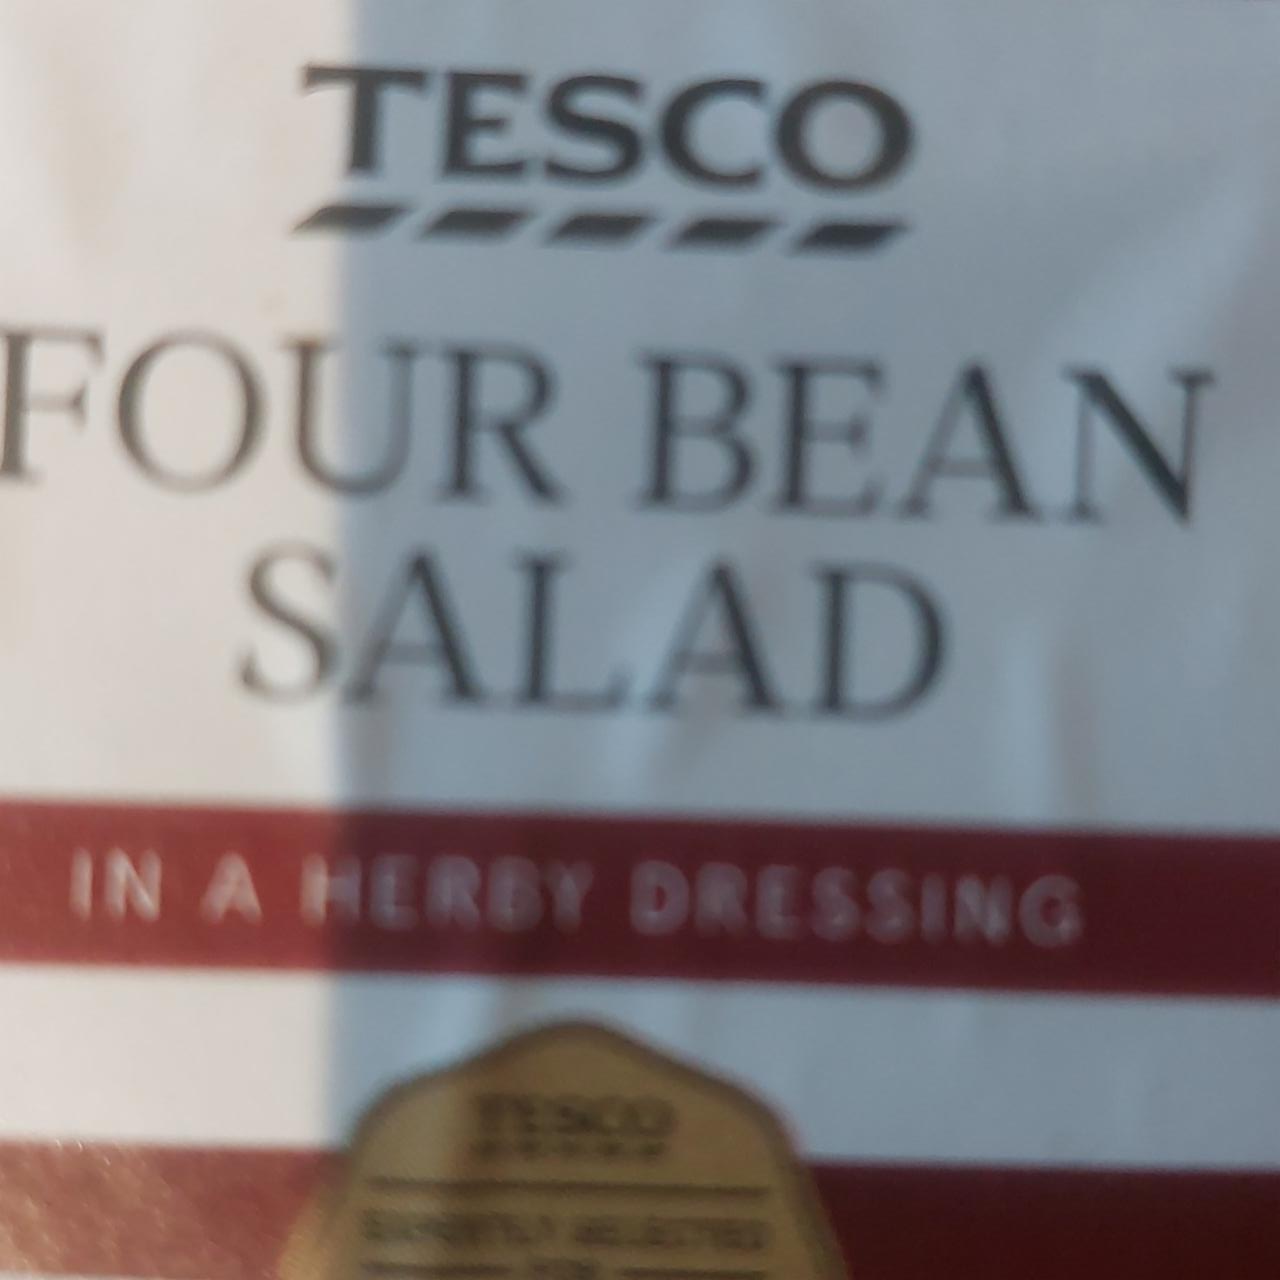 Fotografie - Four Bean Salad Tesco